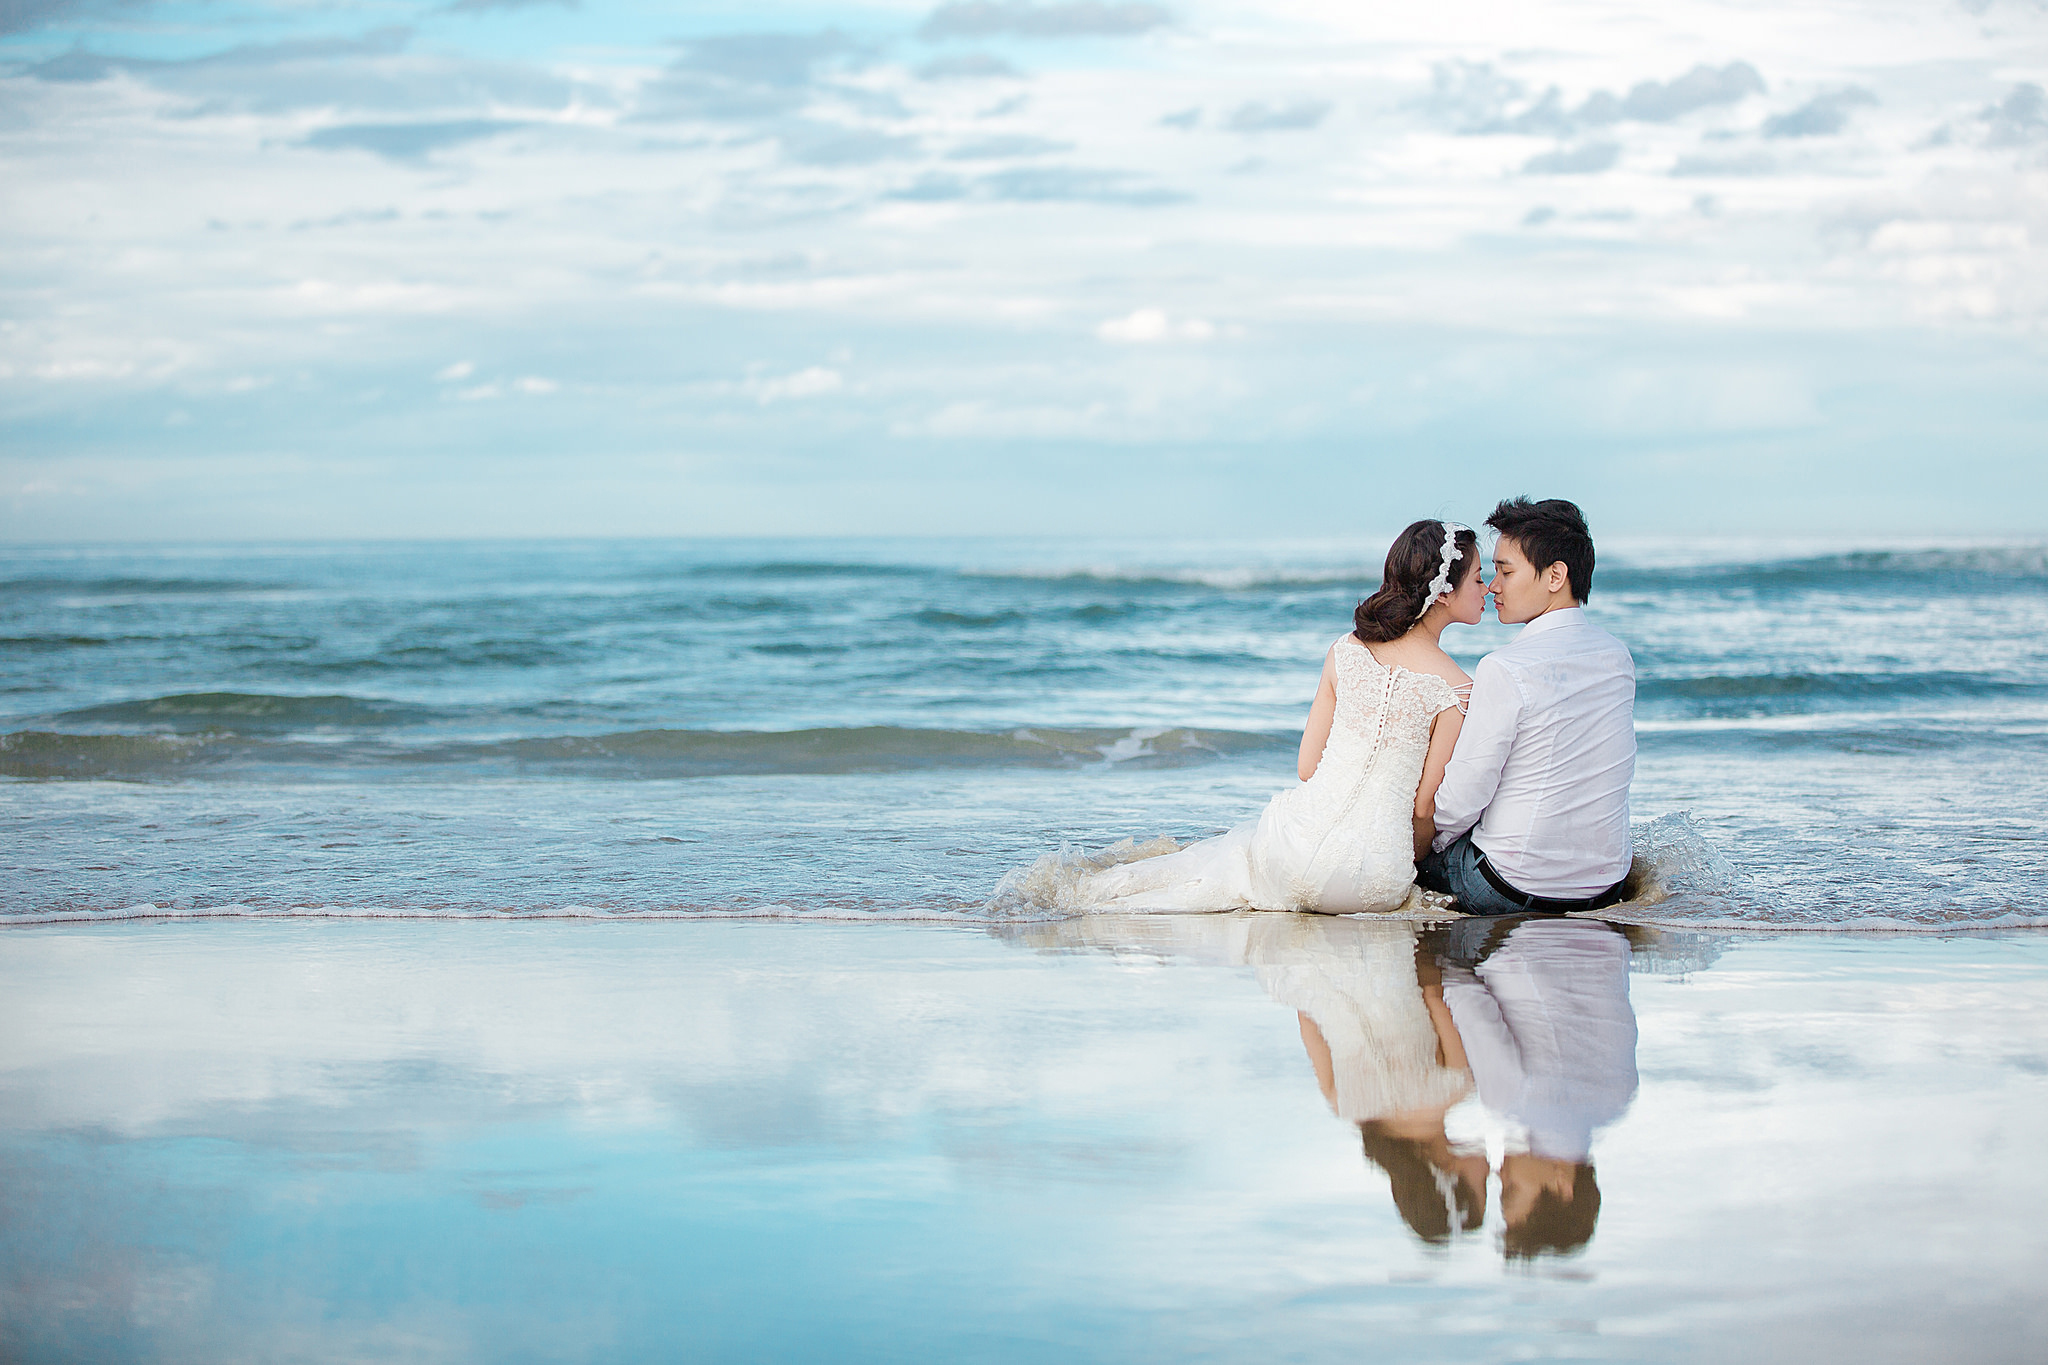 Take me love 5. Свадьба на берегу моря. Свадебная фотосессия на берегу моря. Влюбленные на море. Море любви.